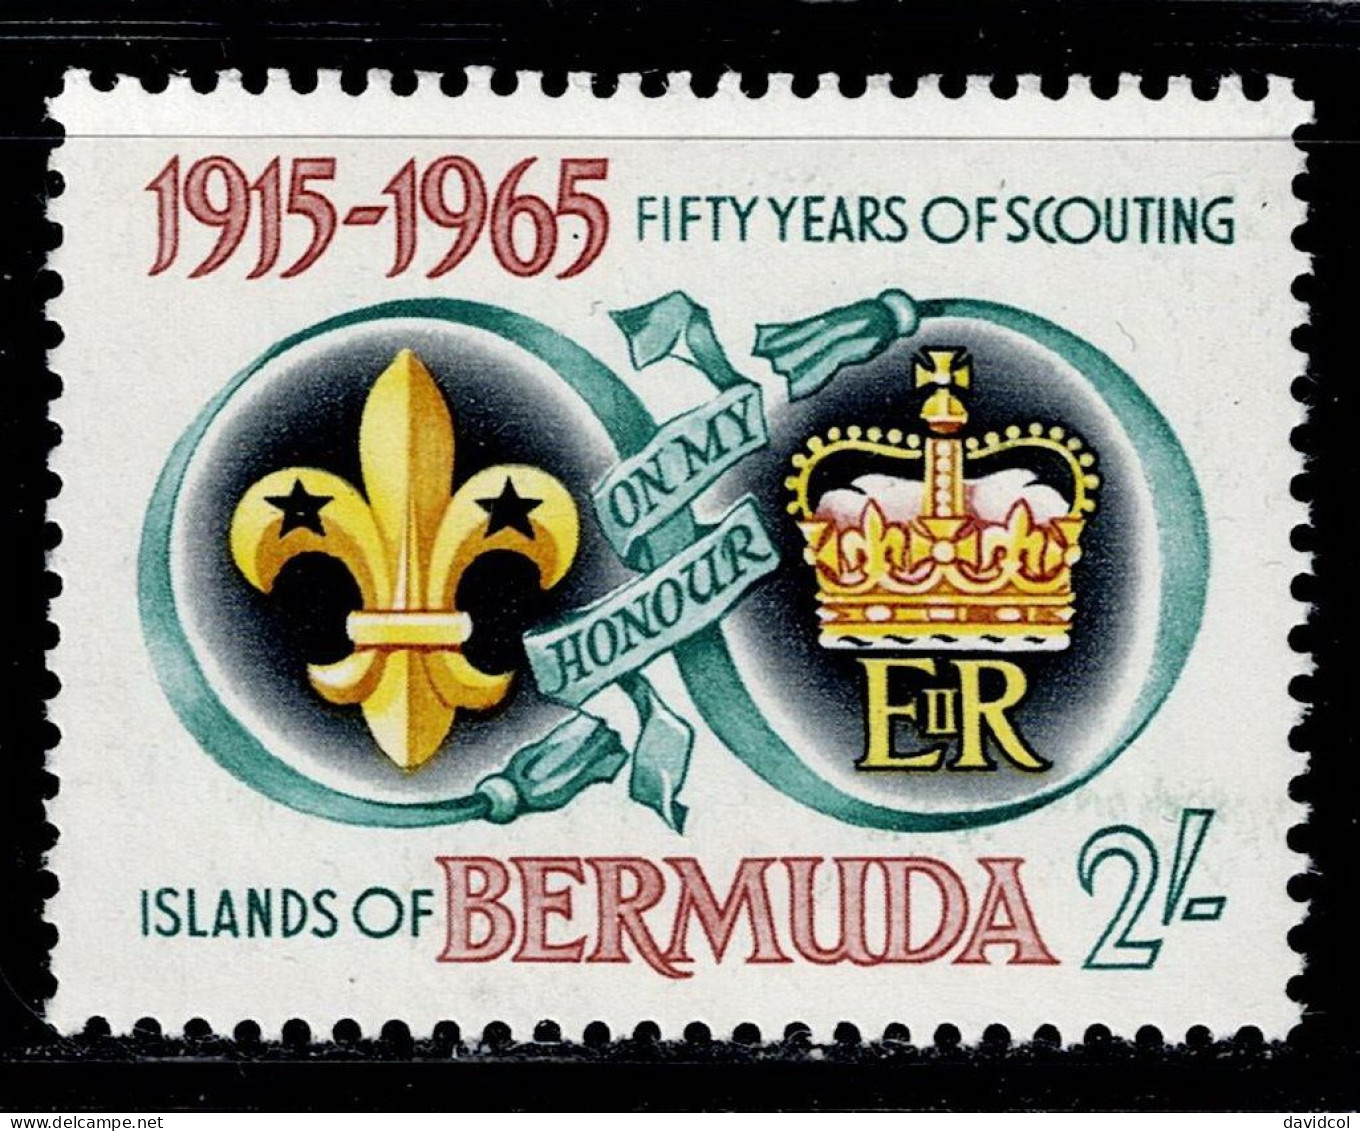 BER-01- BERMUDA - 1965 - SC#:198 - MNH -SCOUTS- - Bermuda